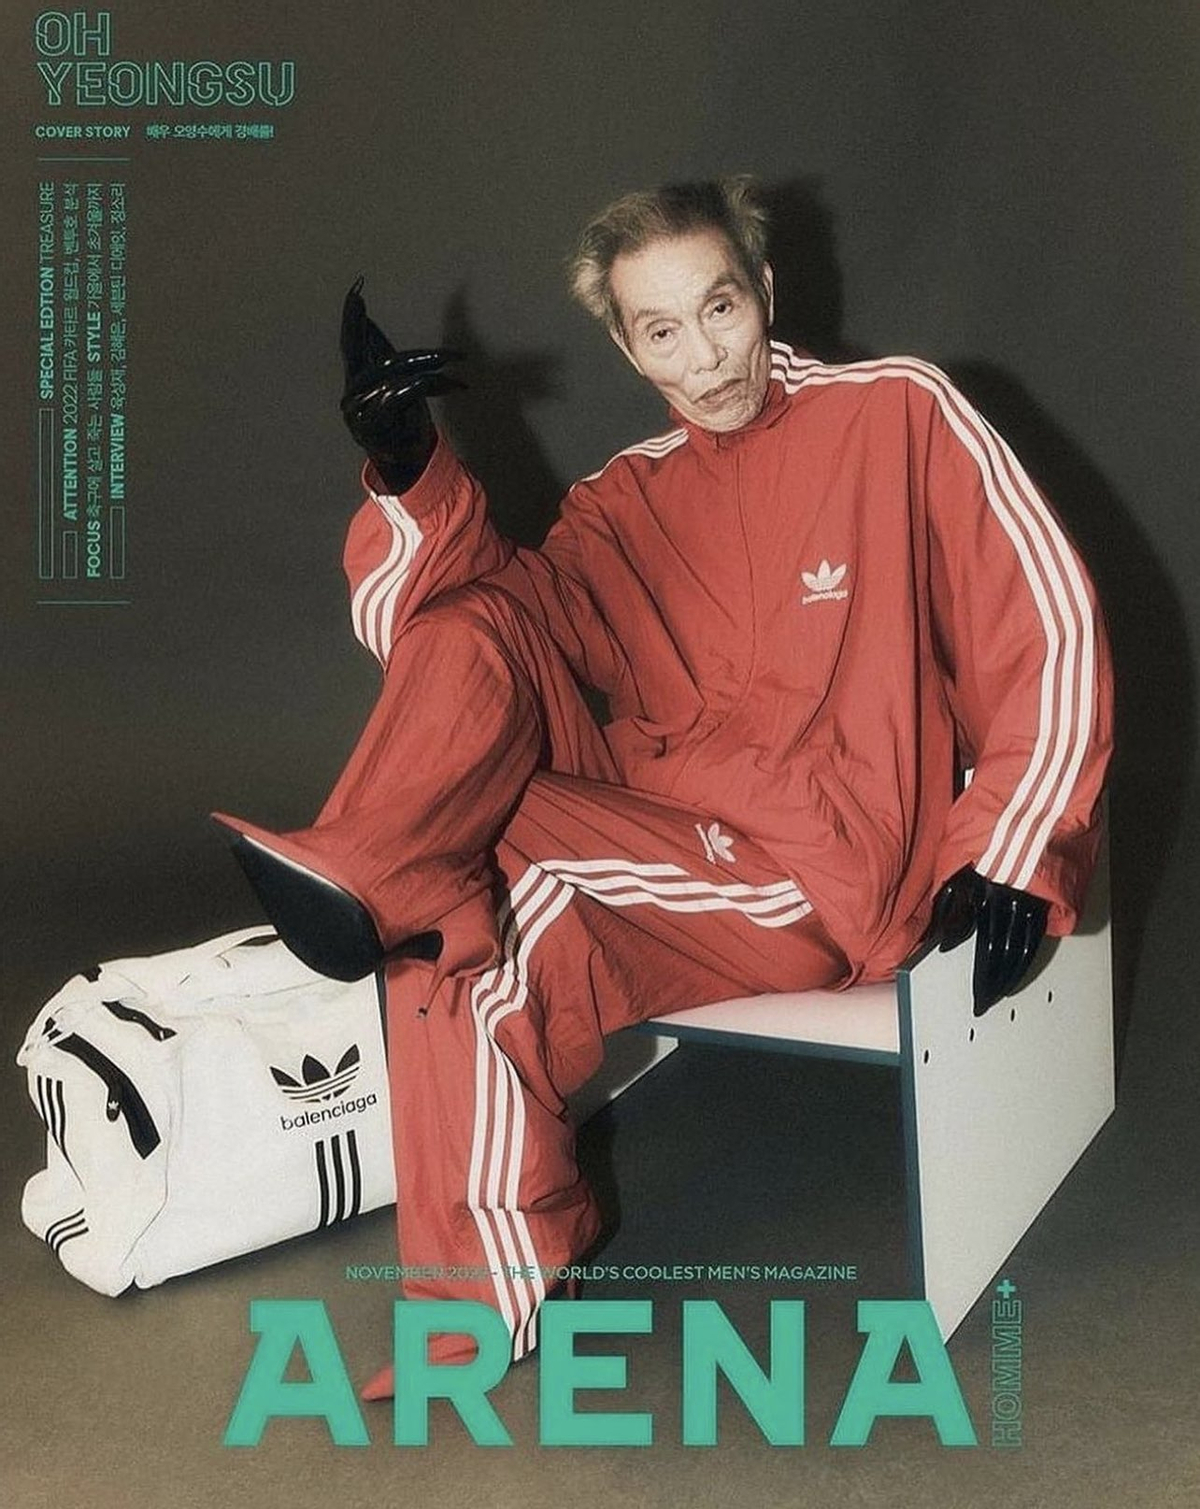 О Ен Су на страницах журнала Arena Homme+ Korea